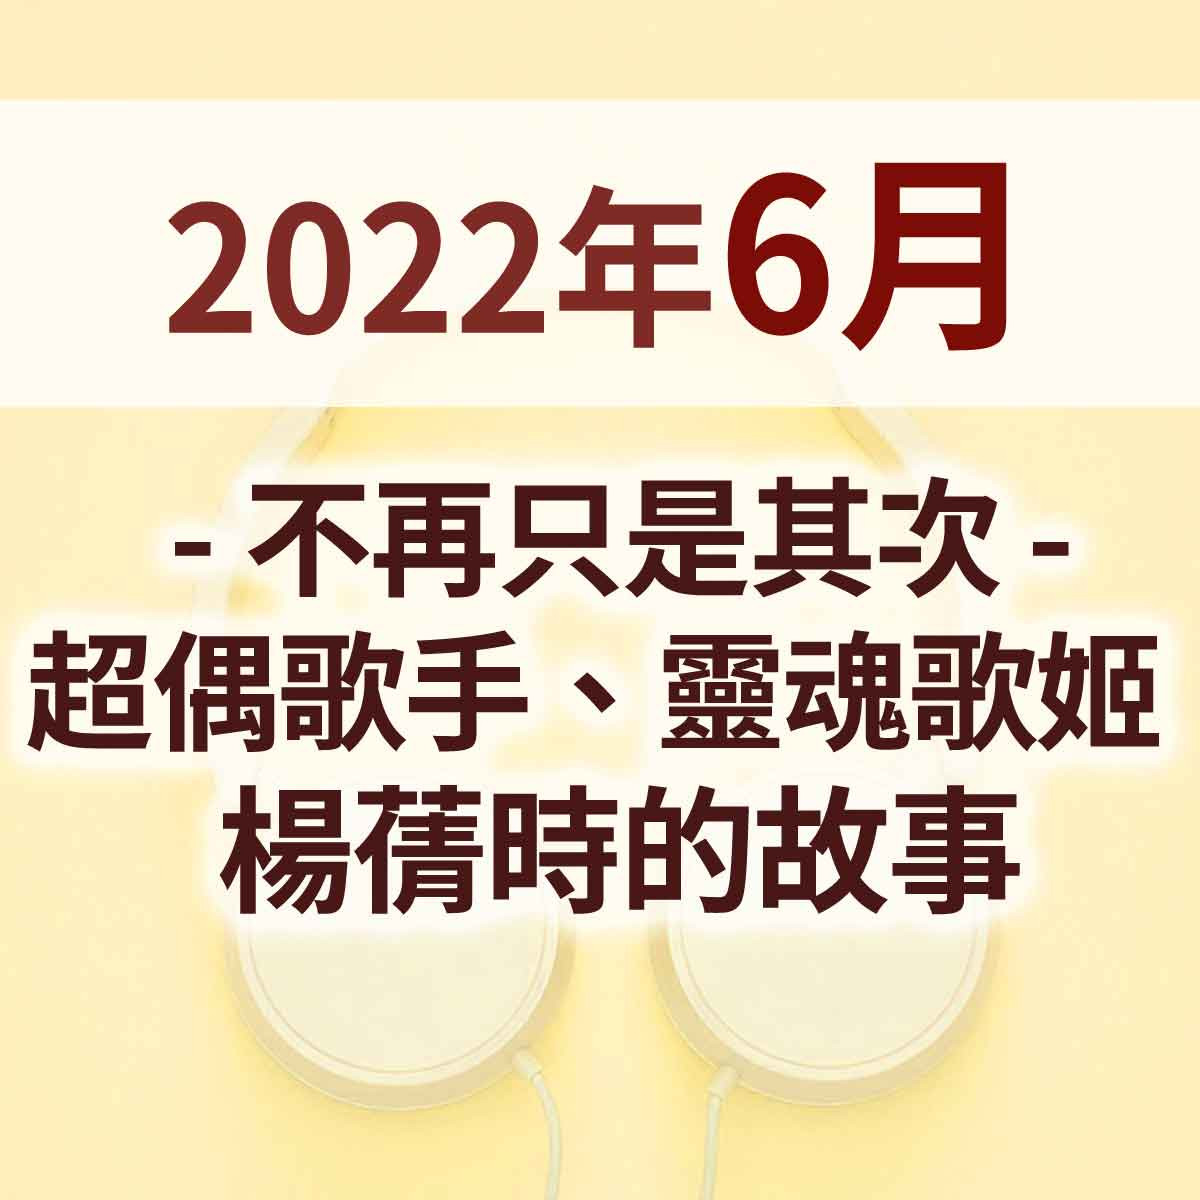 2022年6月 - 不再只是其次 - 超偶歌手、靈魂歌姬  楊蒨時的故事封面圖